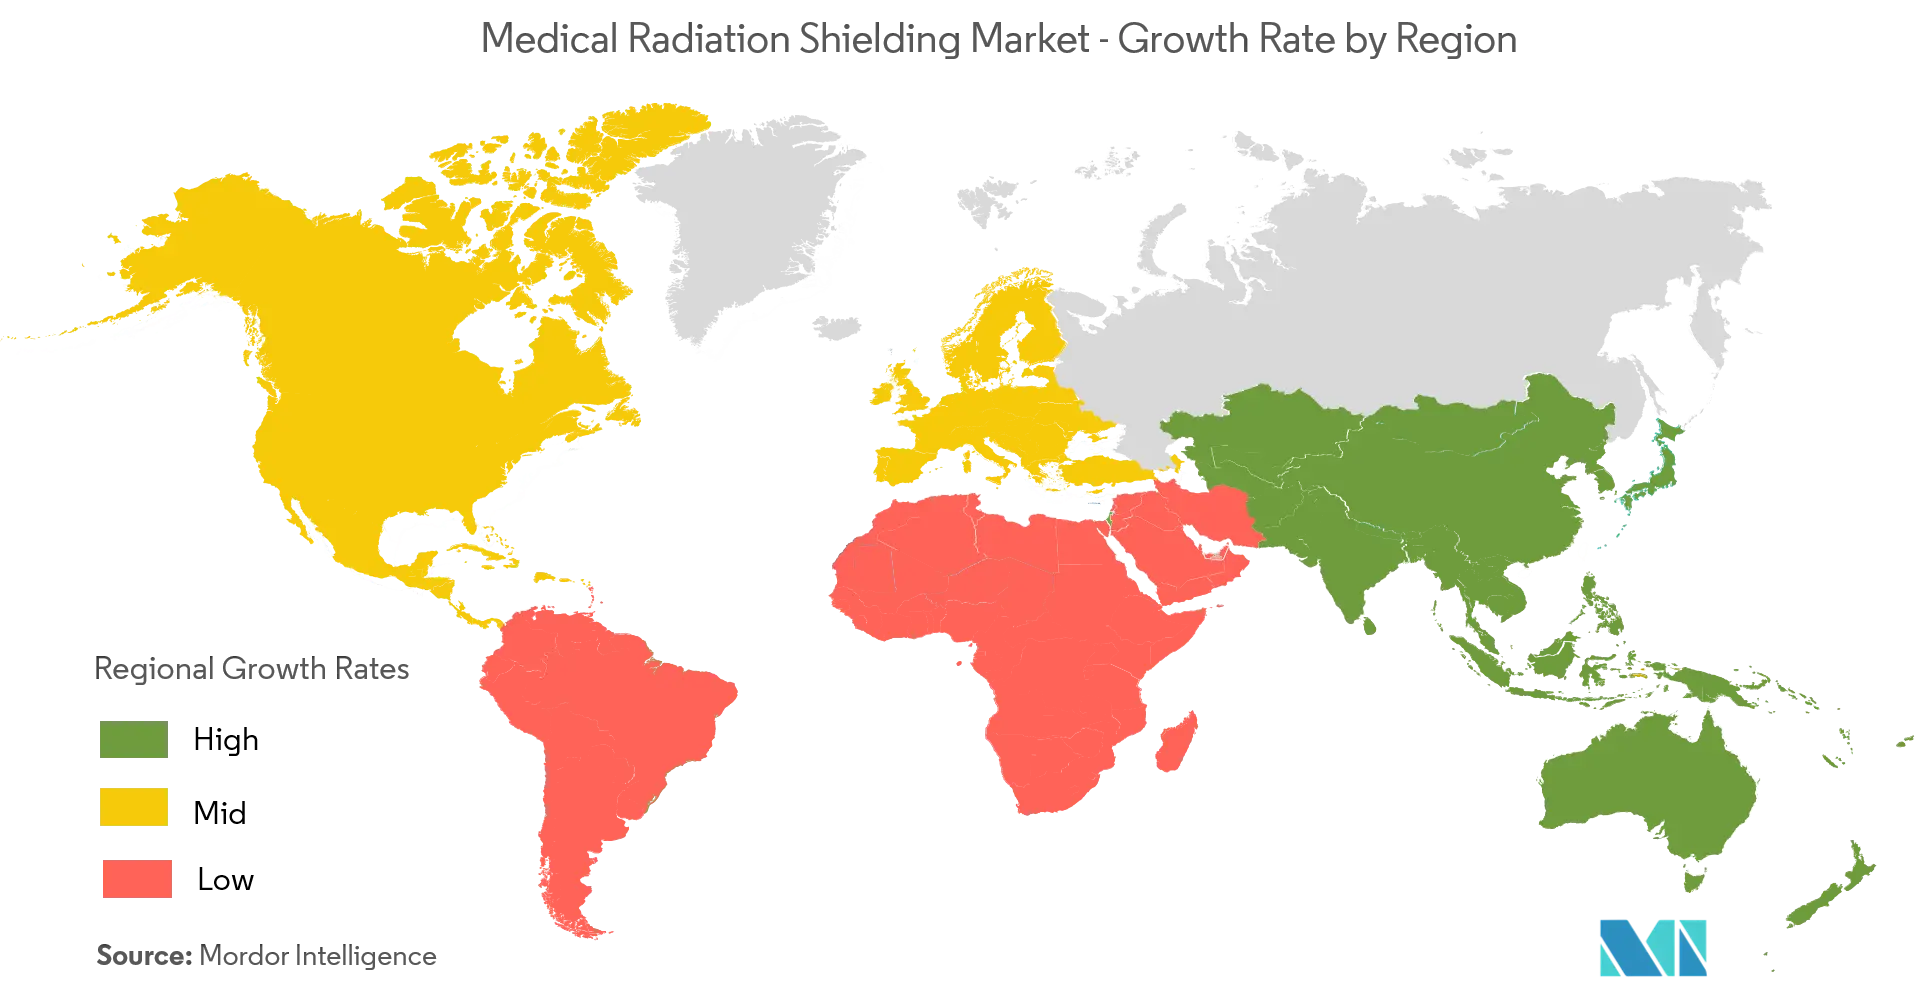 Medical Radiation Shielding Market